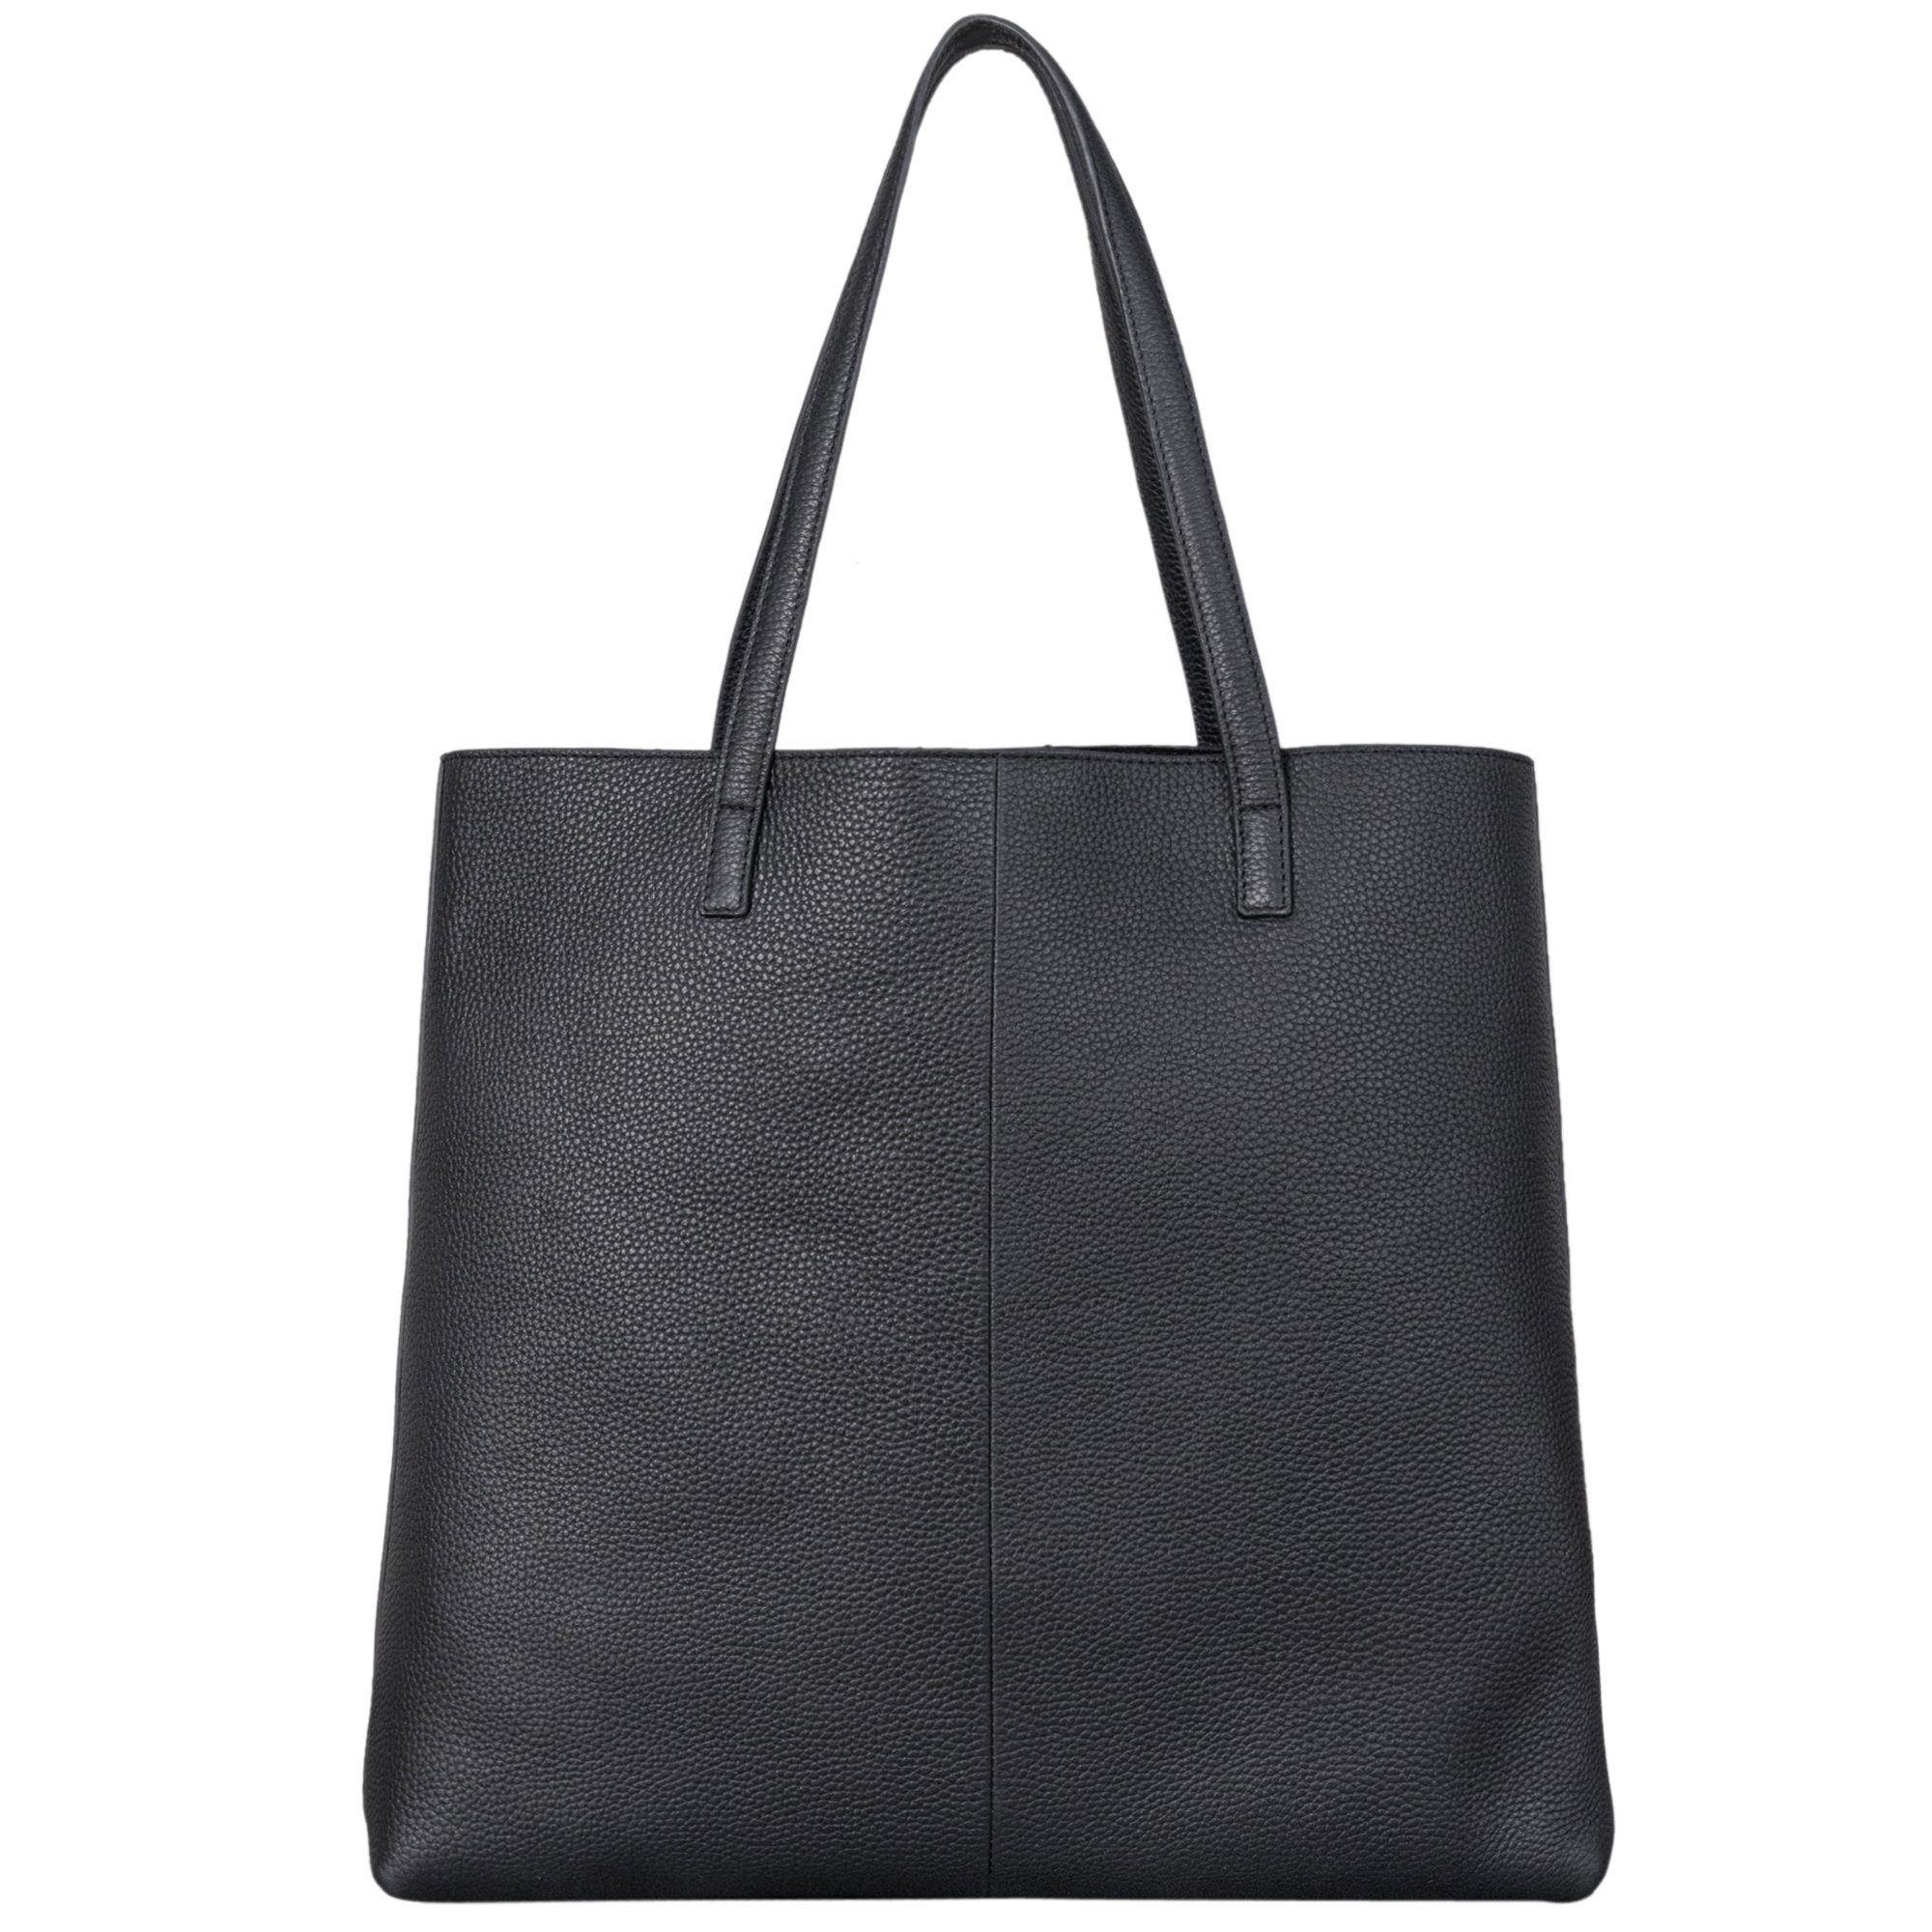 STILORD Handtasche "Carlotta" Stilvolle Shopper Tasche Damen Leder schwarz